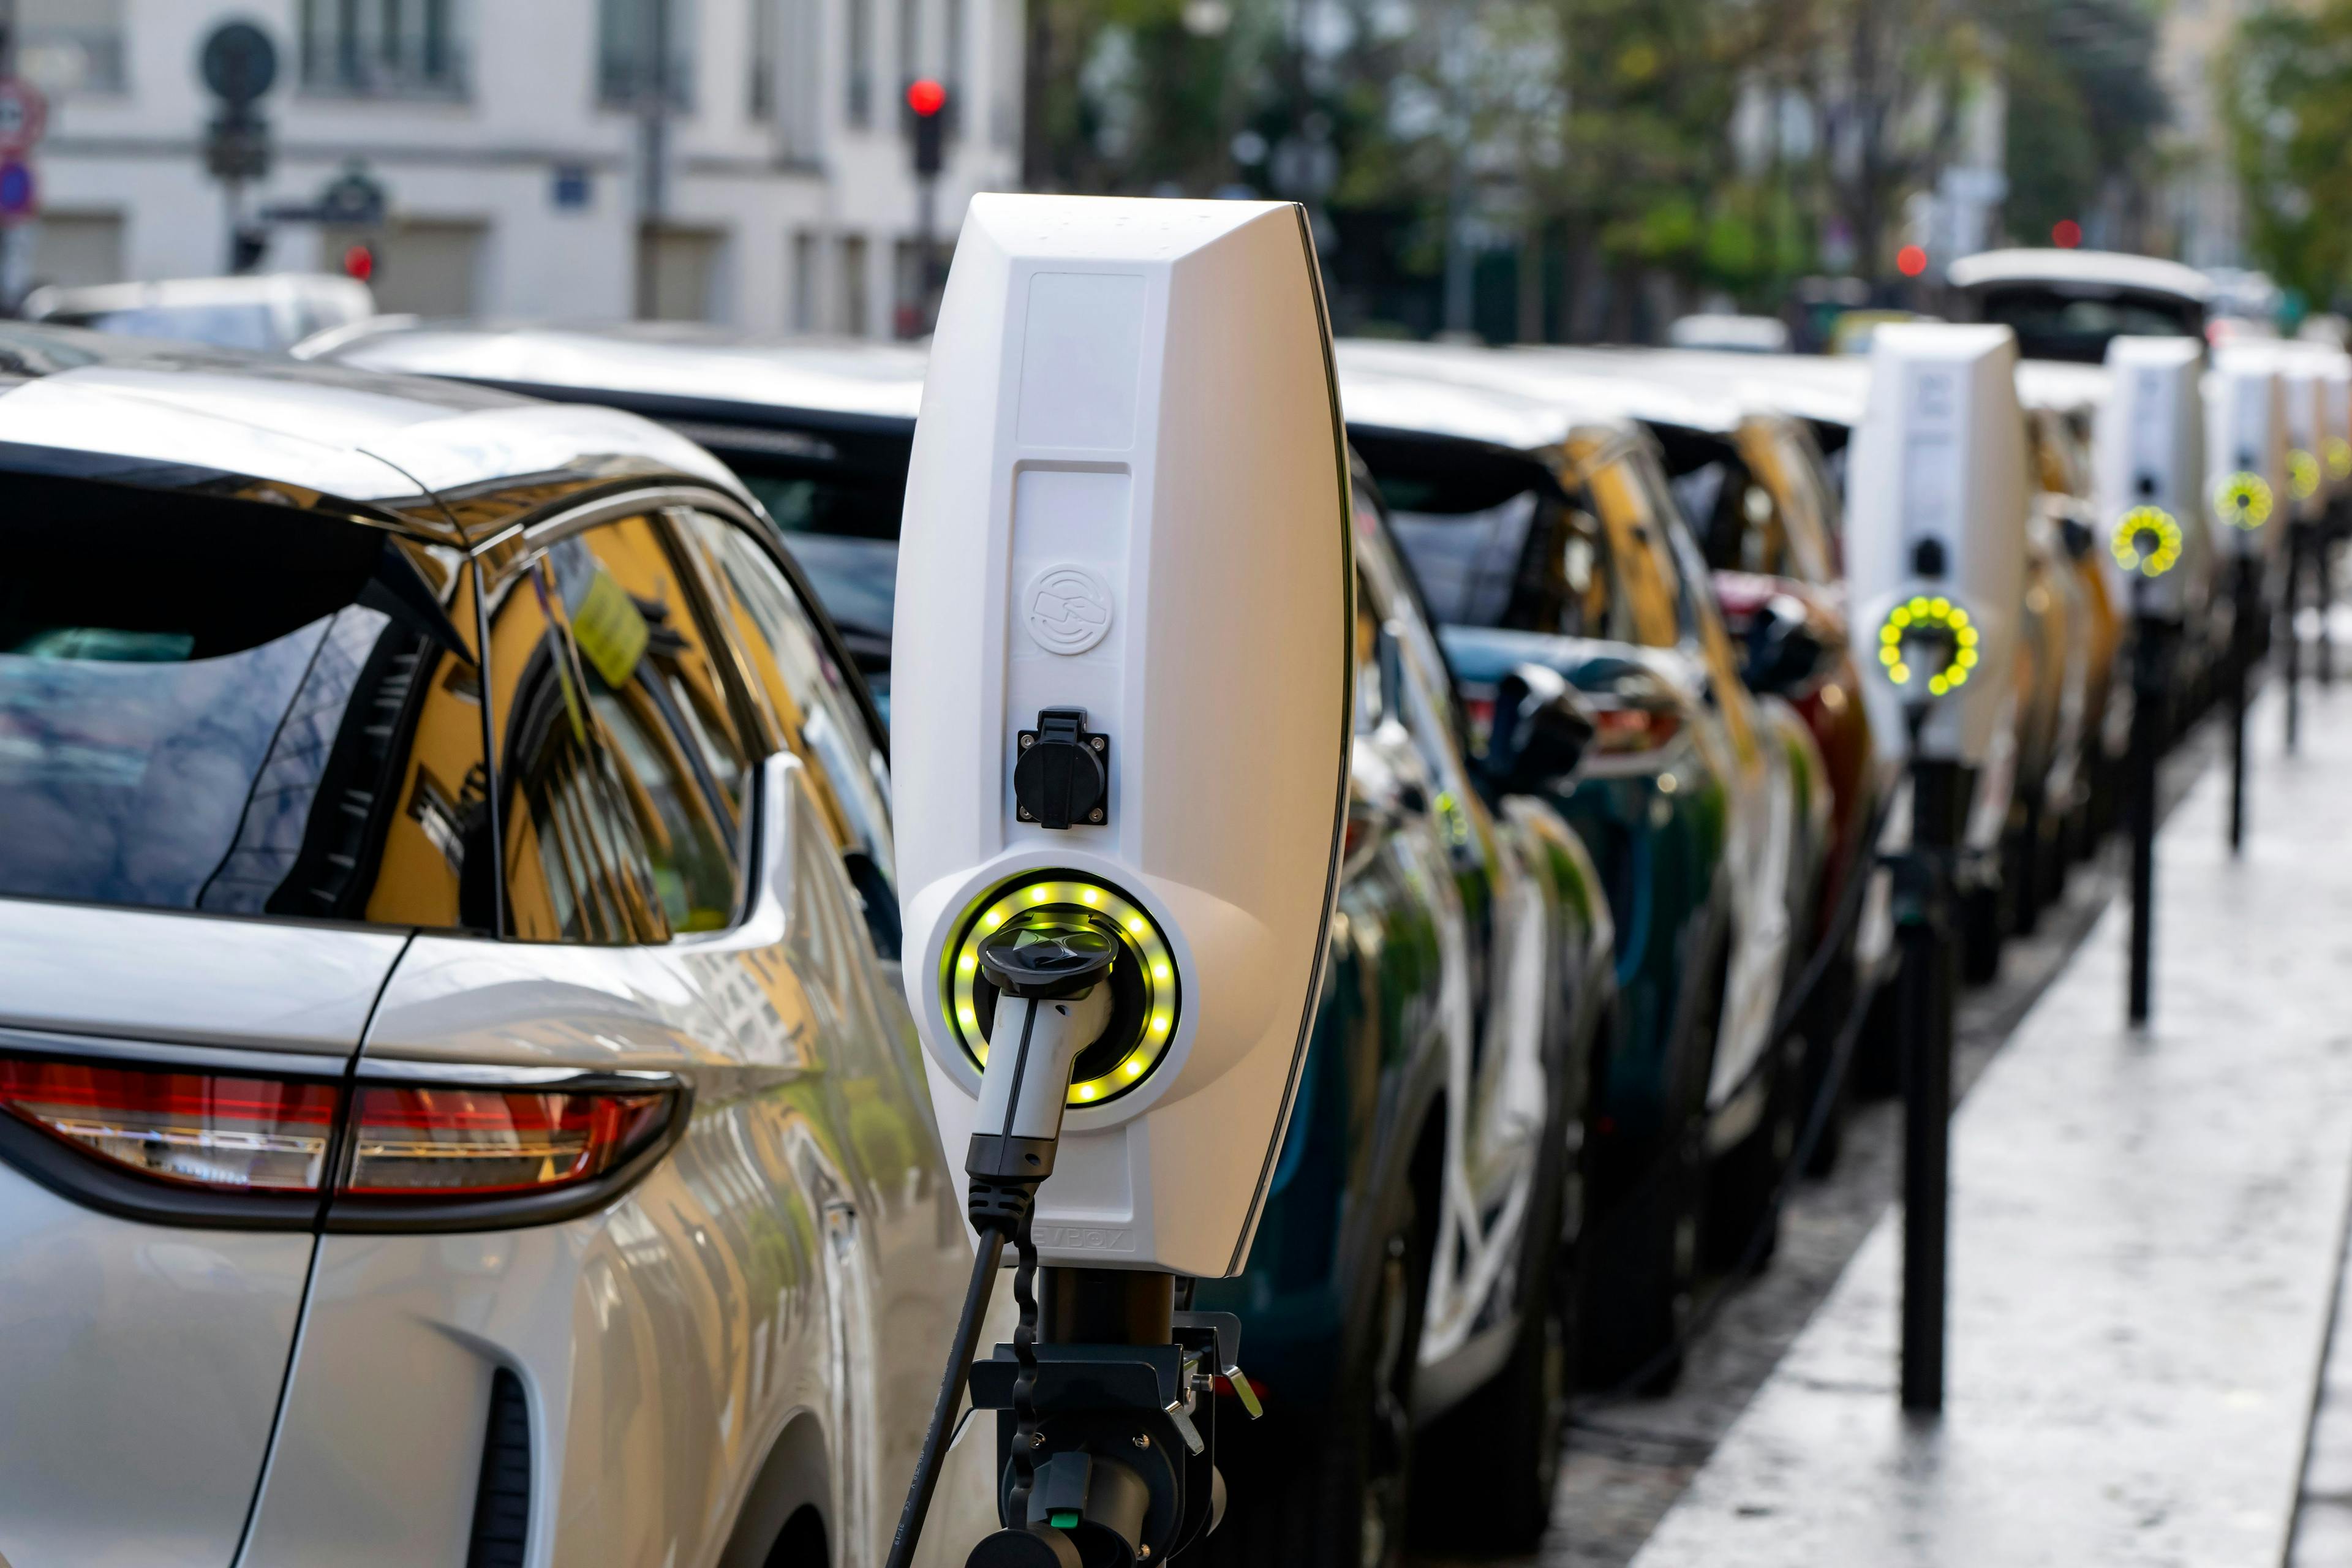 Bornes de recharge pour véhicules électriques ou hybrides rechargeables